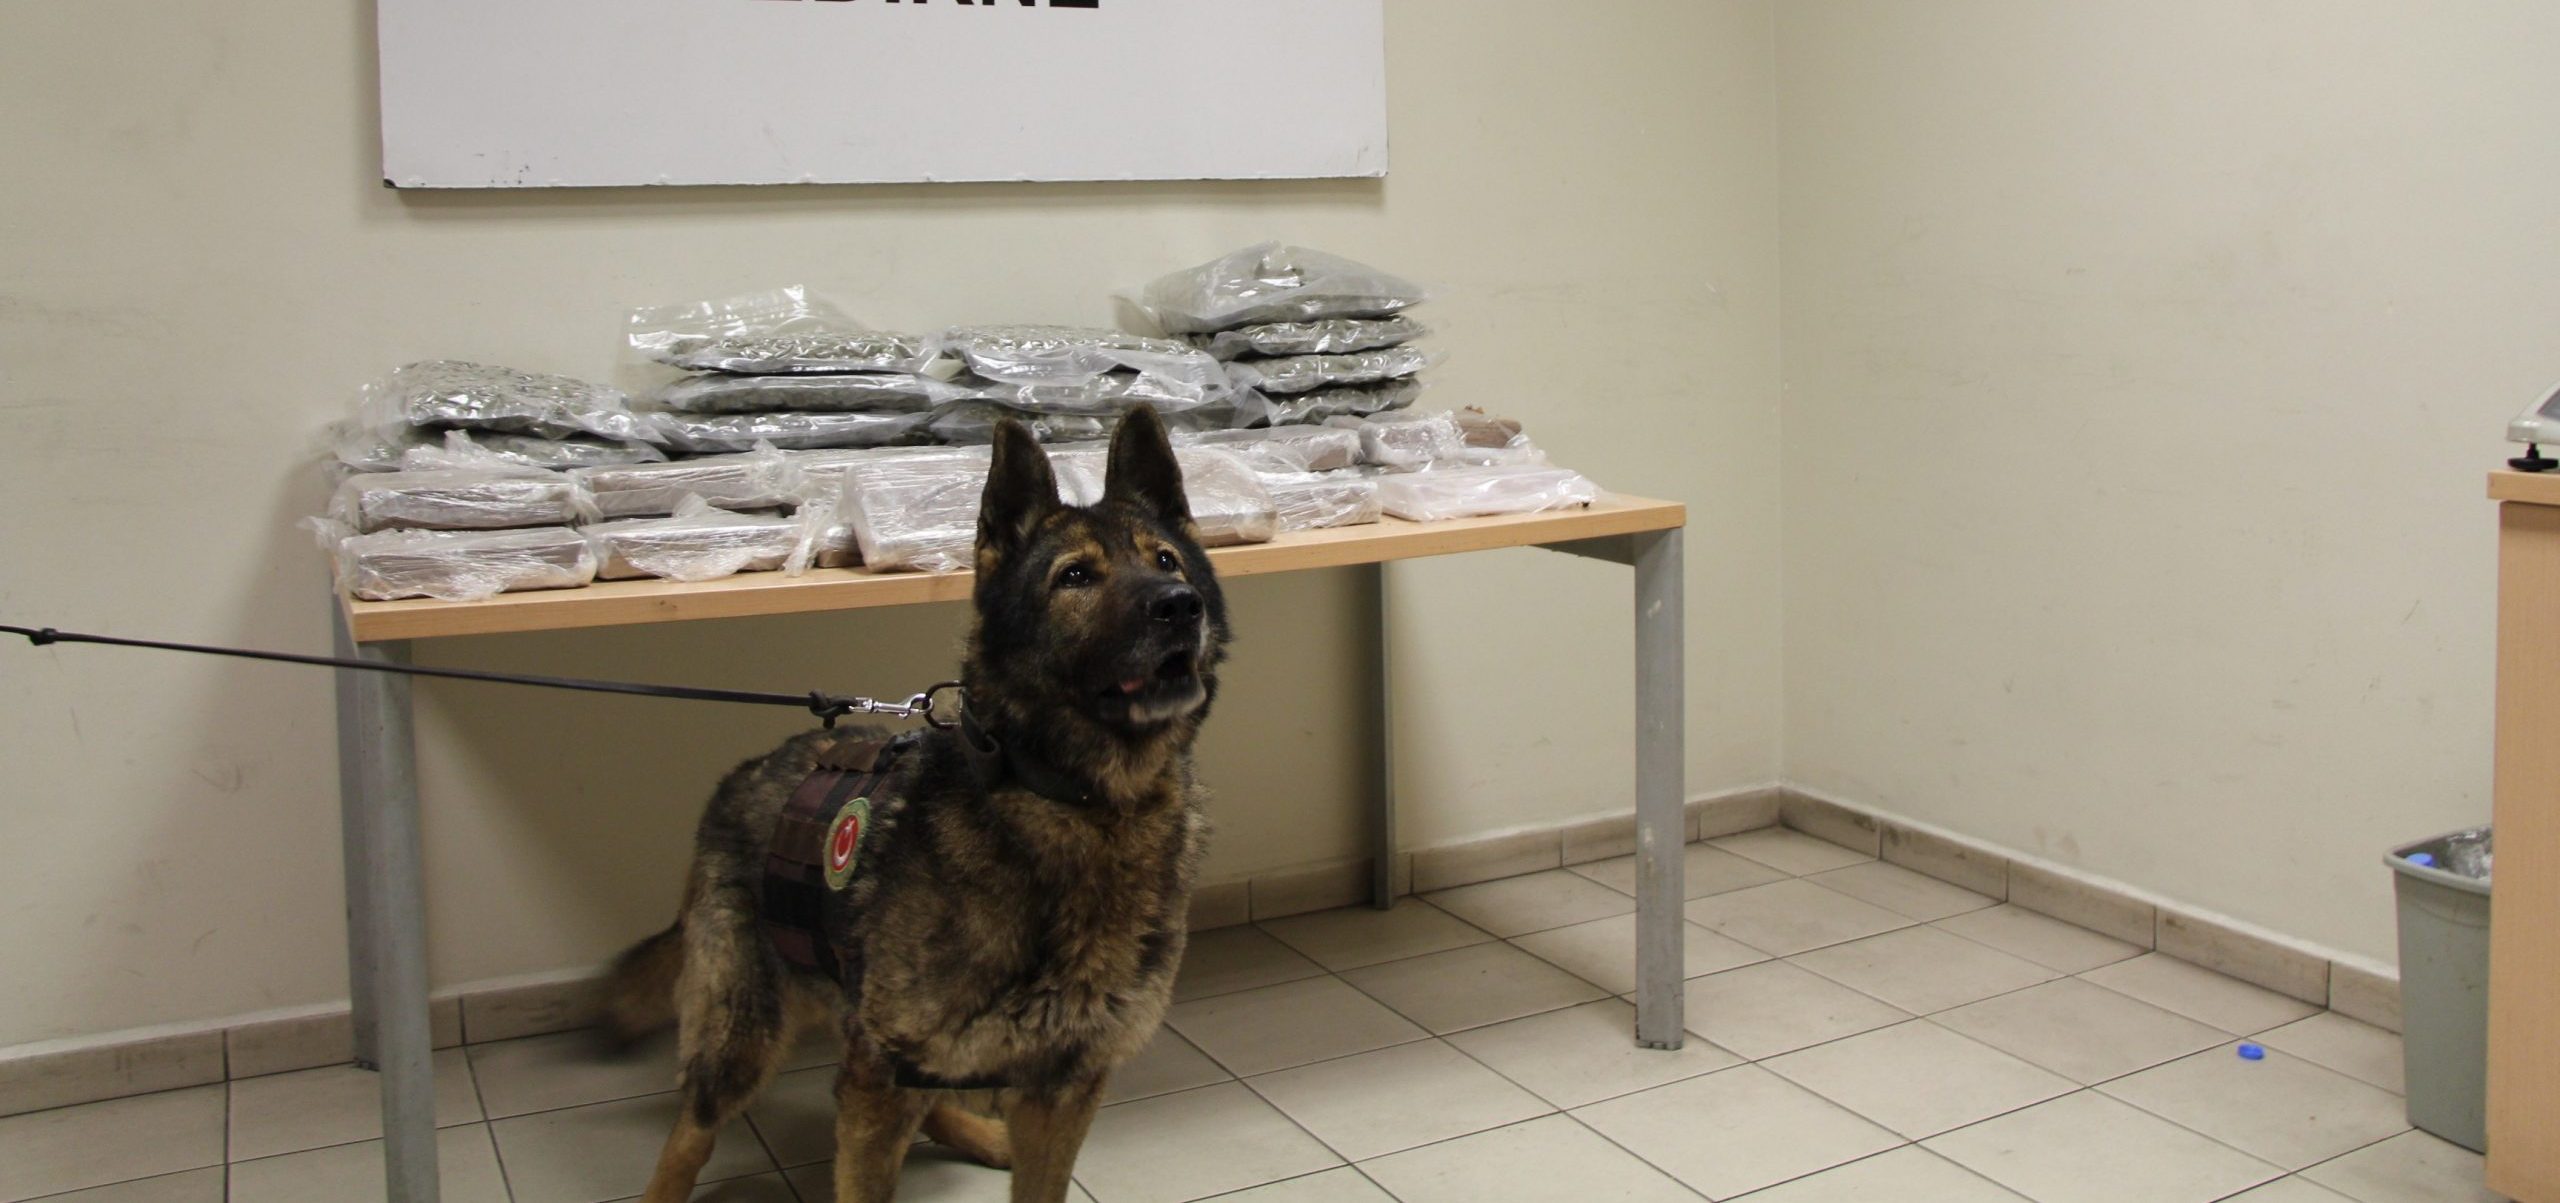 33 Kilogram Uyuşturucu Ele Geçirildi: Kaçakçılık Operasyonuyla İlgili Soruşturma Başlatıldı!